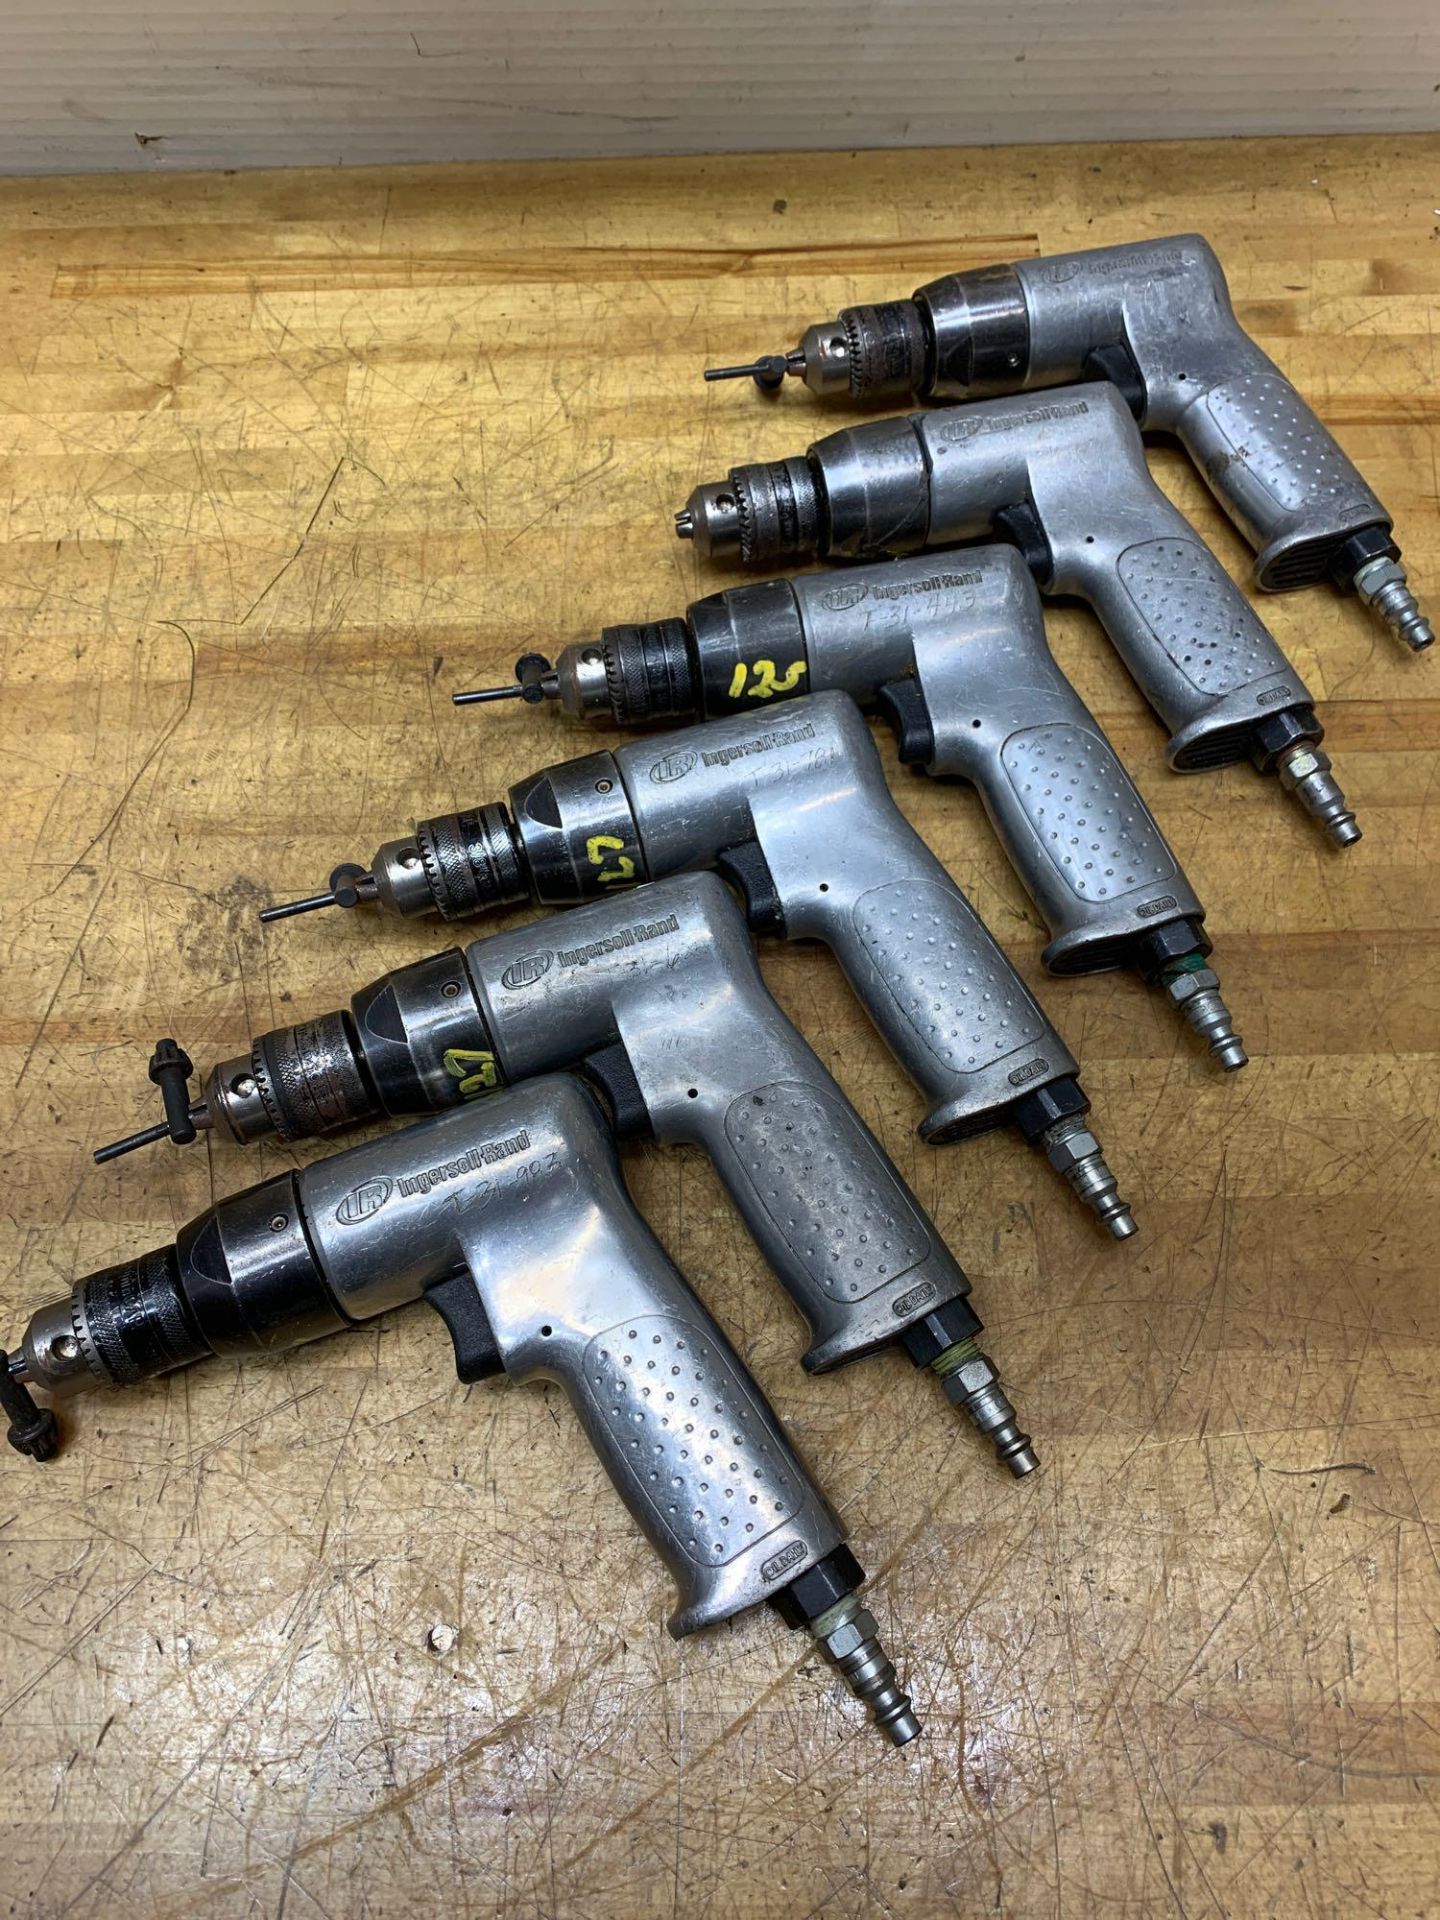 Ingersoll Rand Pneumatic Power Drill Guns